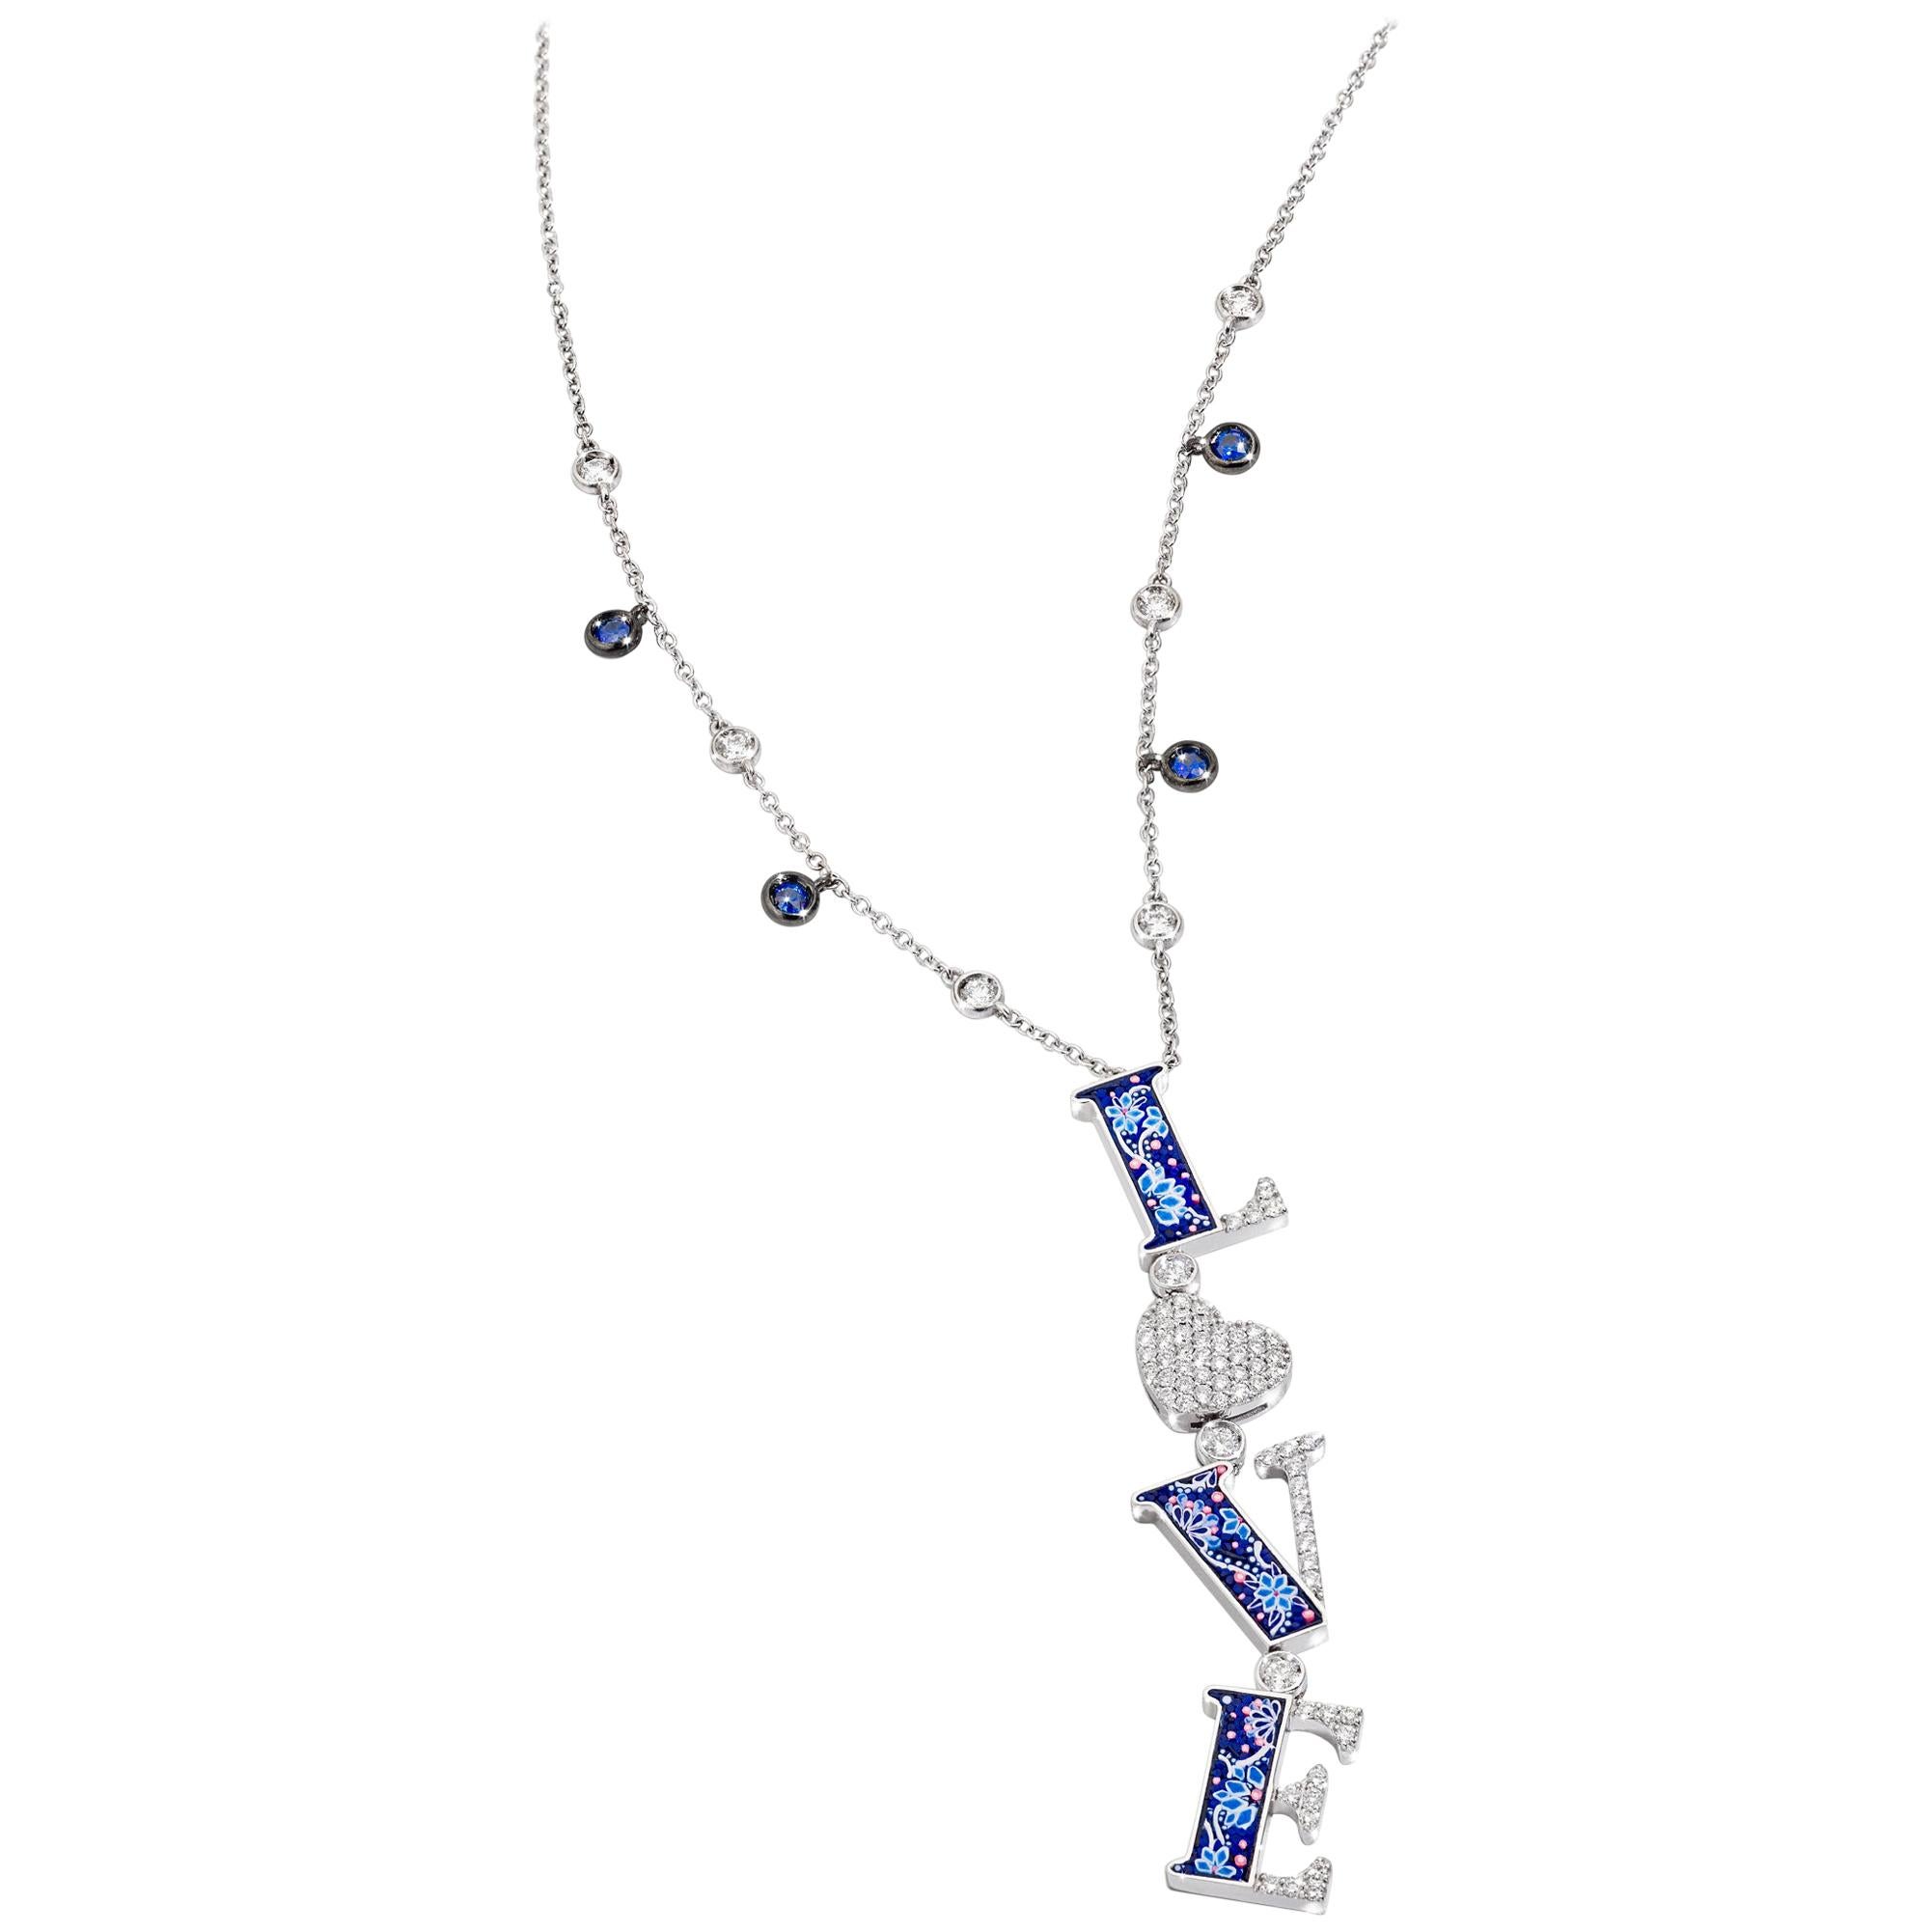 Love Halskette, weiße Diamanten, Weißgold, blaue Saphire, Mikromosaik, dekoriert